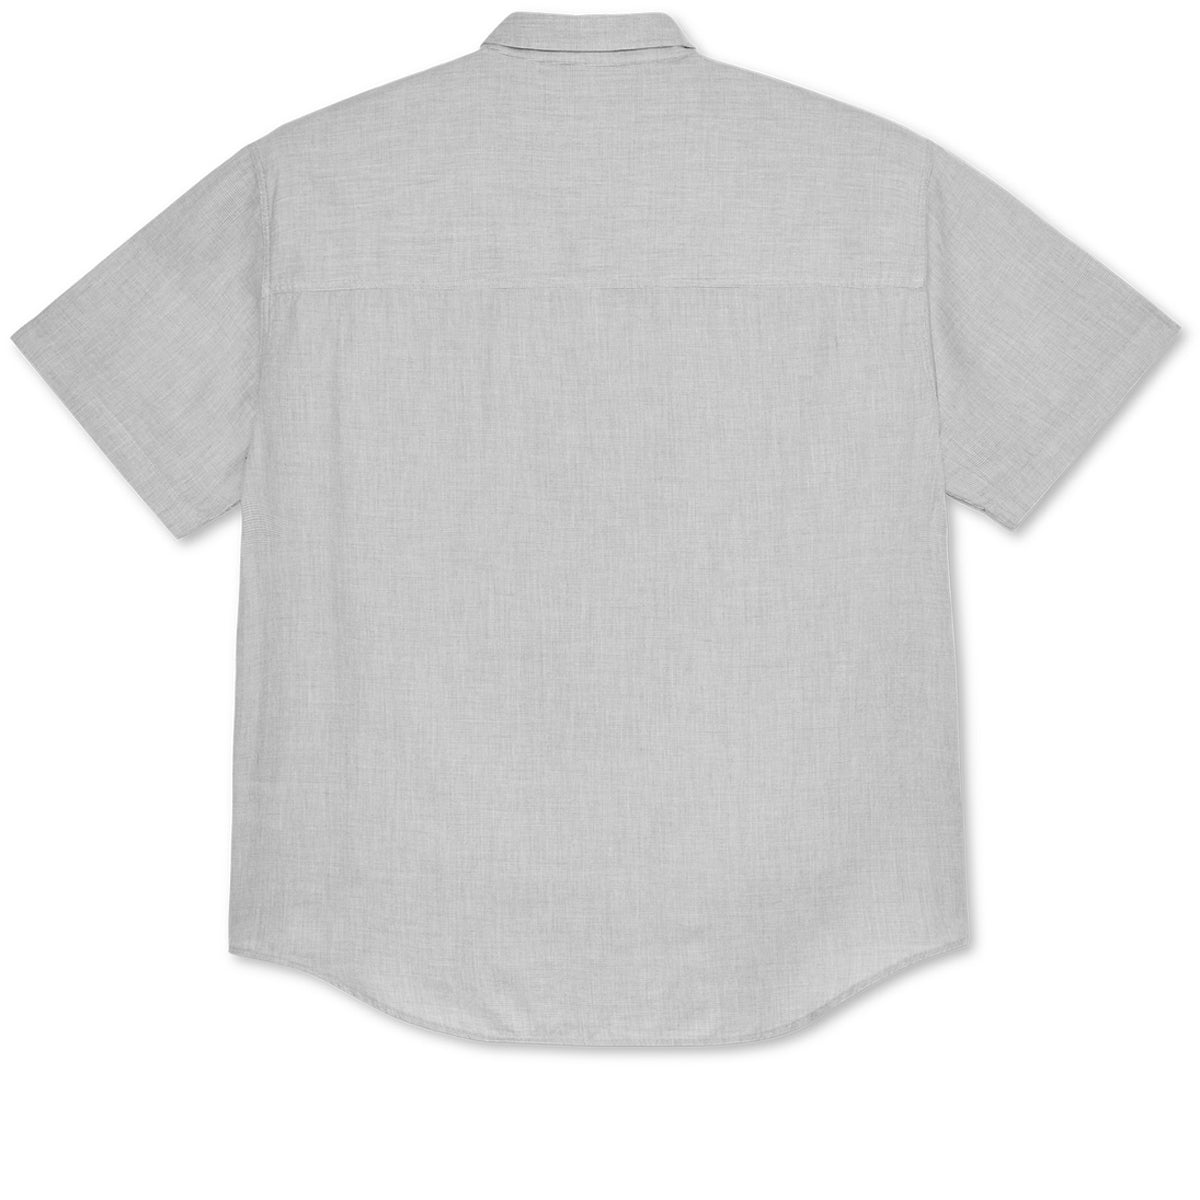 Polar Bob Shirt - Grey image 2